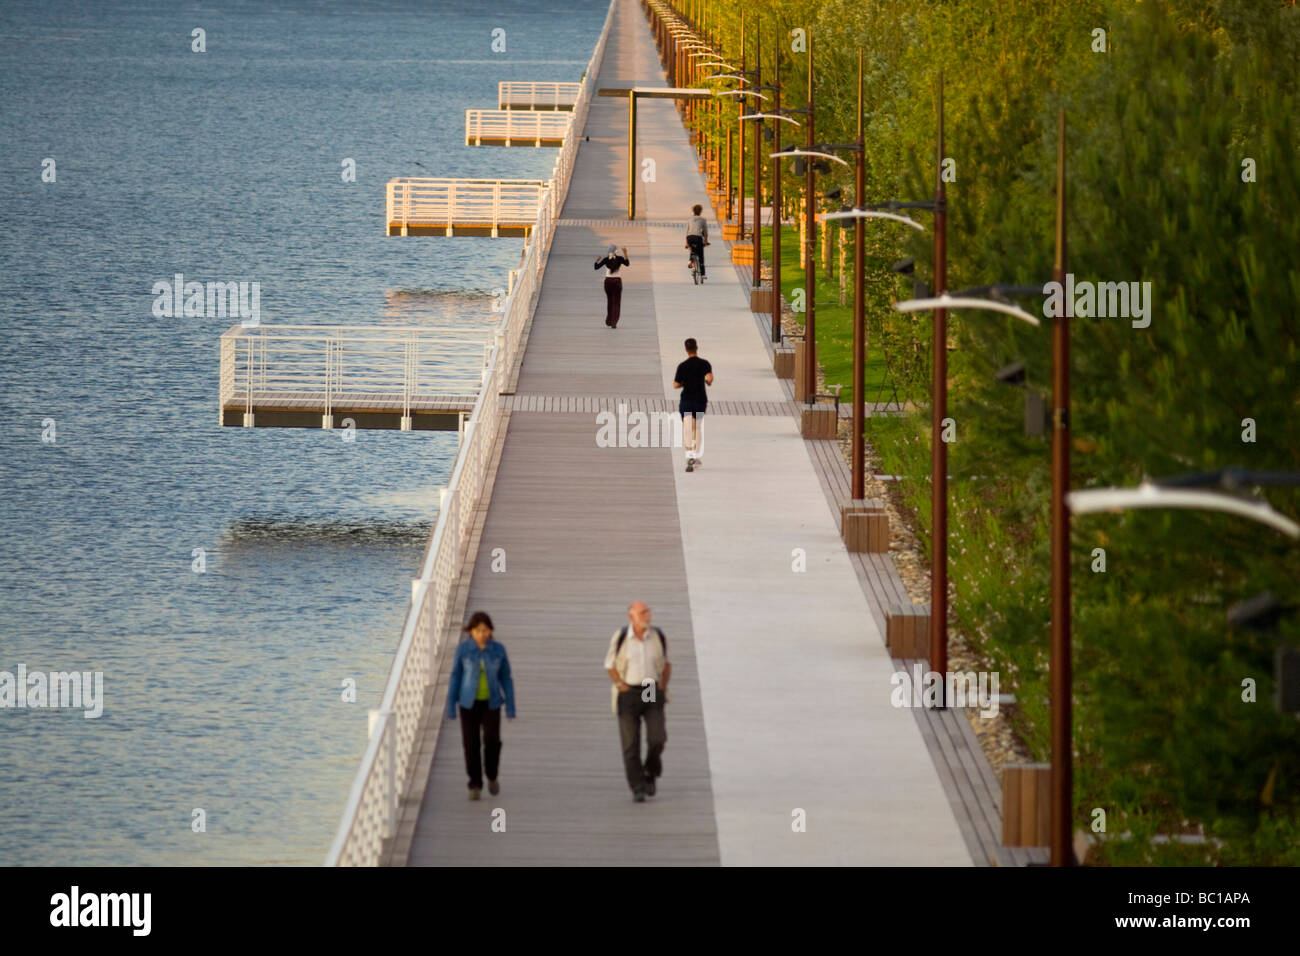 A Vichy, un stabiliti esplanade per pedoni e per chi ama fare jogging (Francia). A Vichy, esplanade aménagée pour piétons et joggeurs. Foto Stock